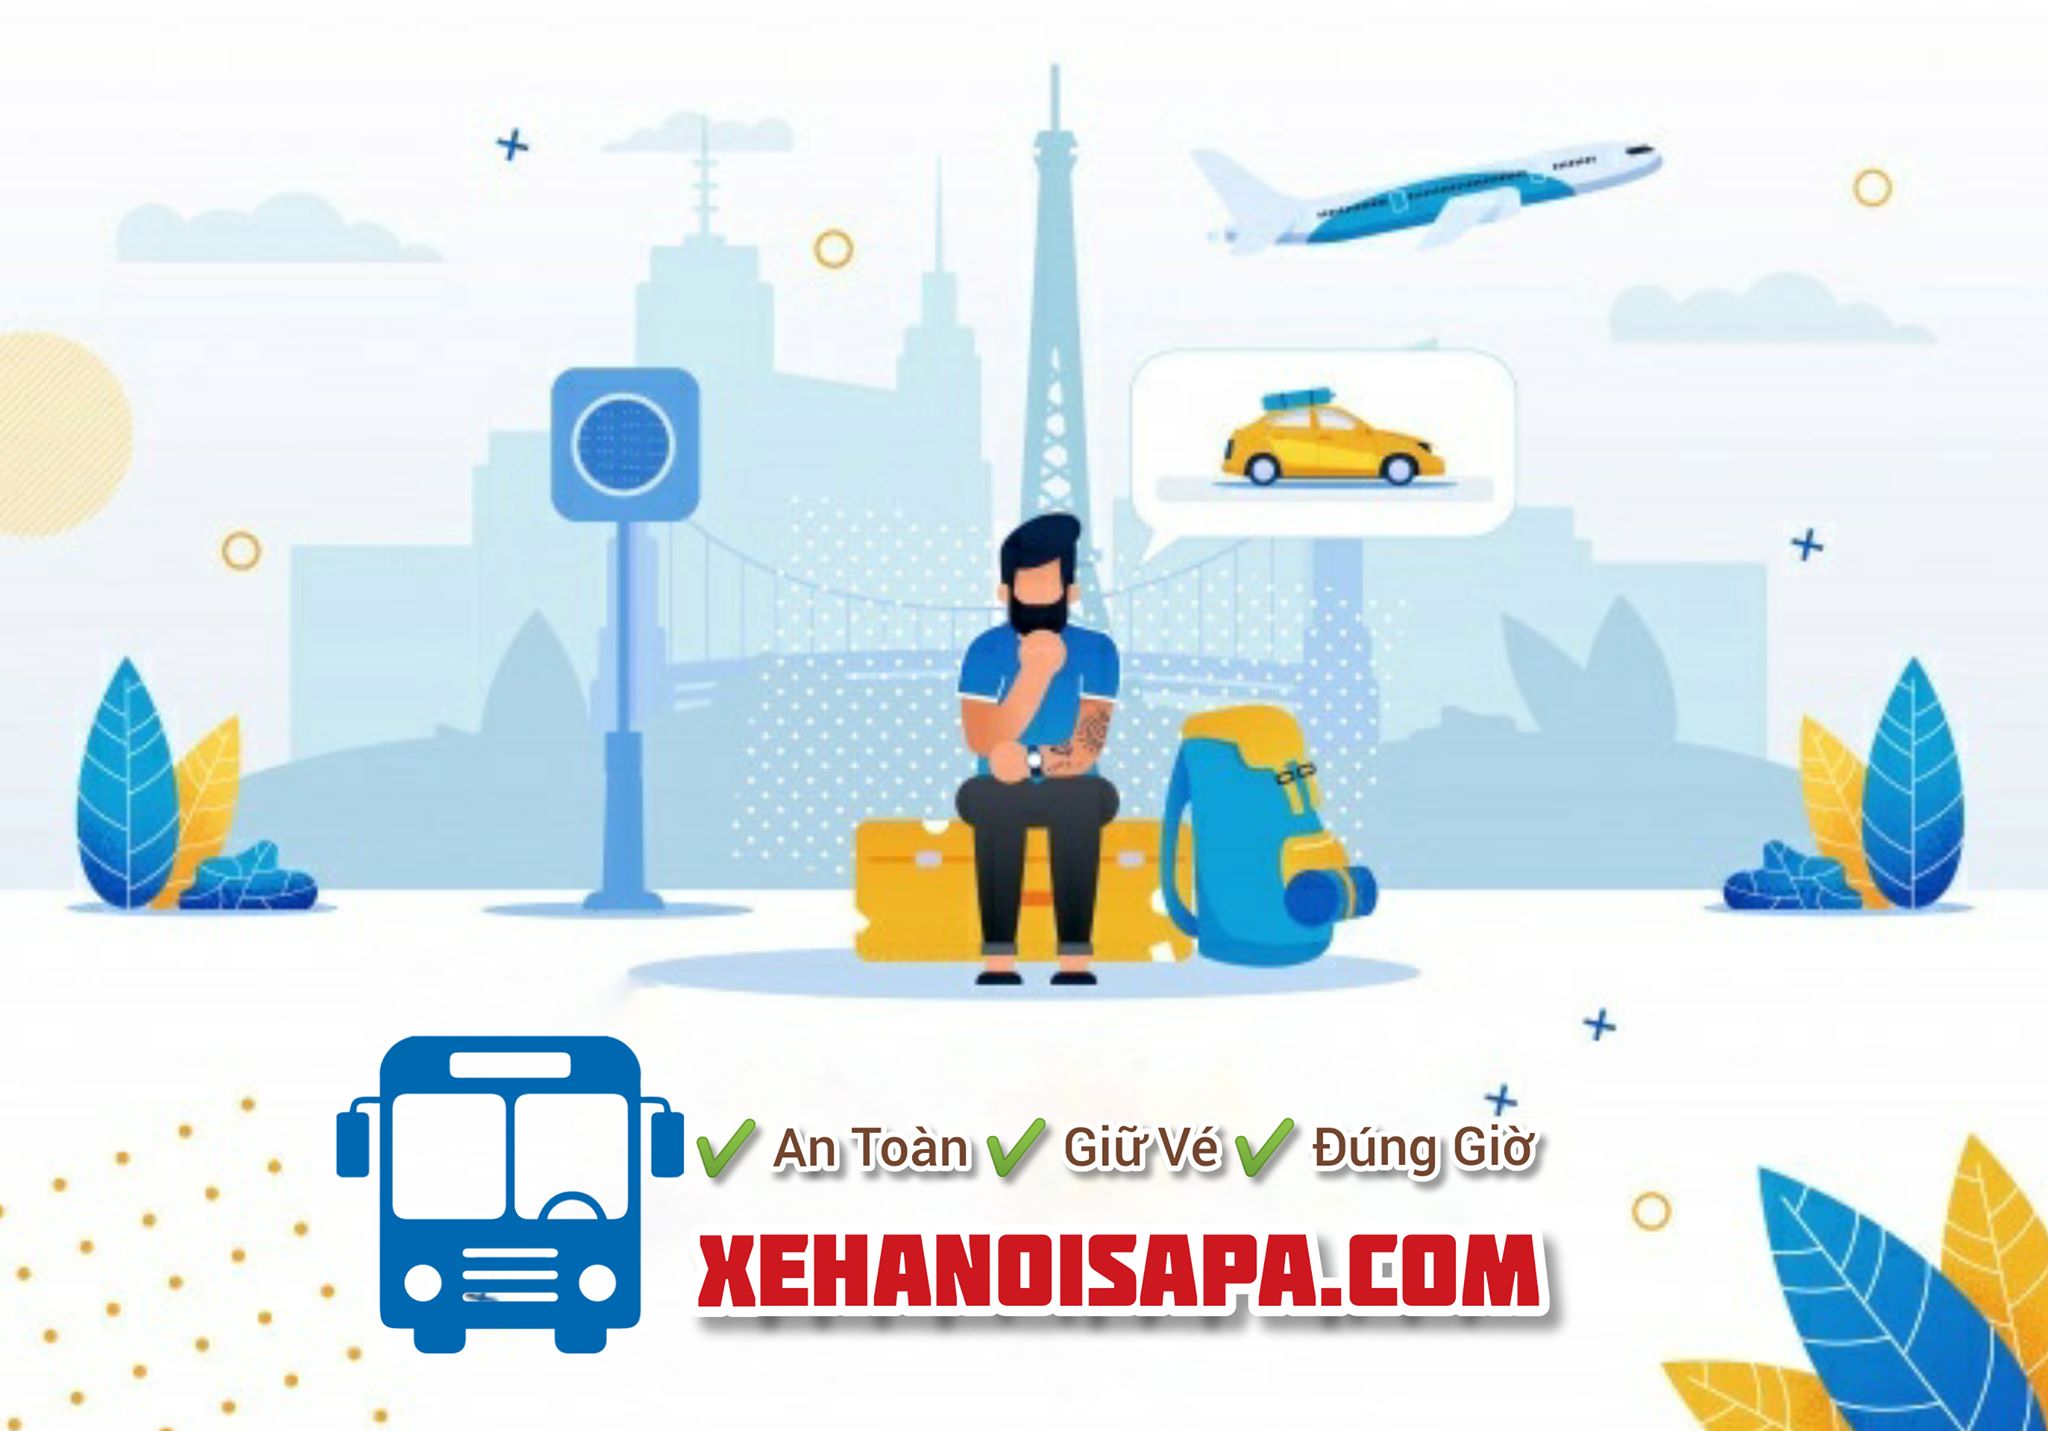 Hãng xe Green Bus - Booking nhanh chóng tại Xehanoisapa.com